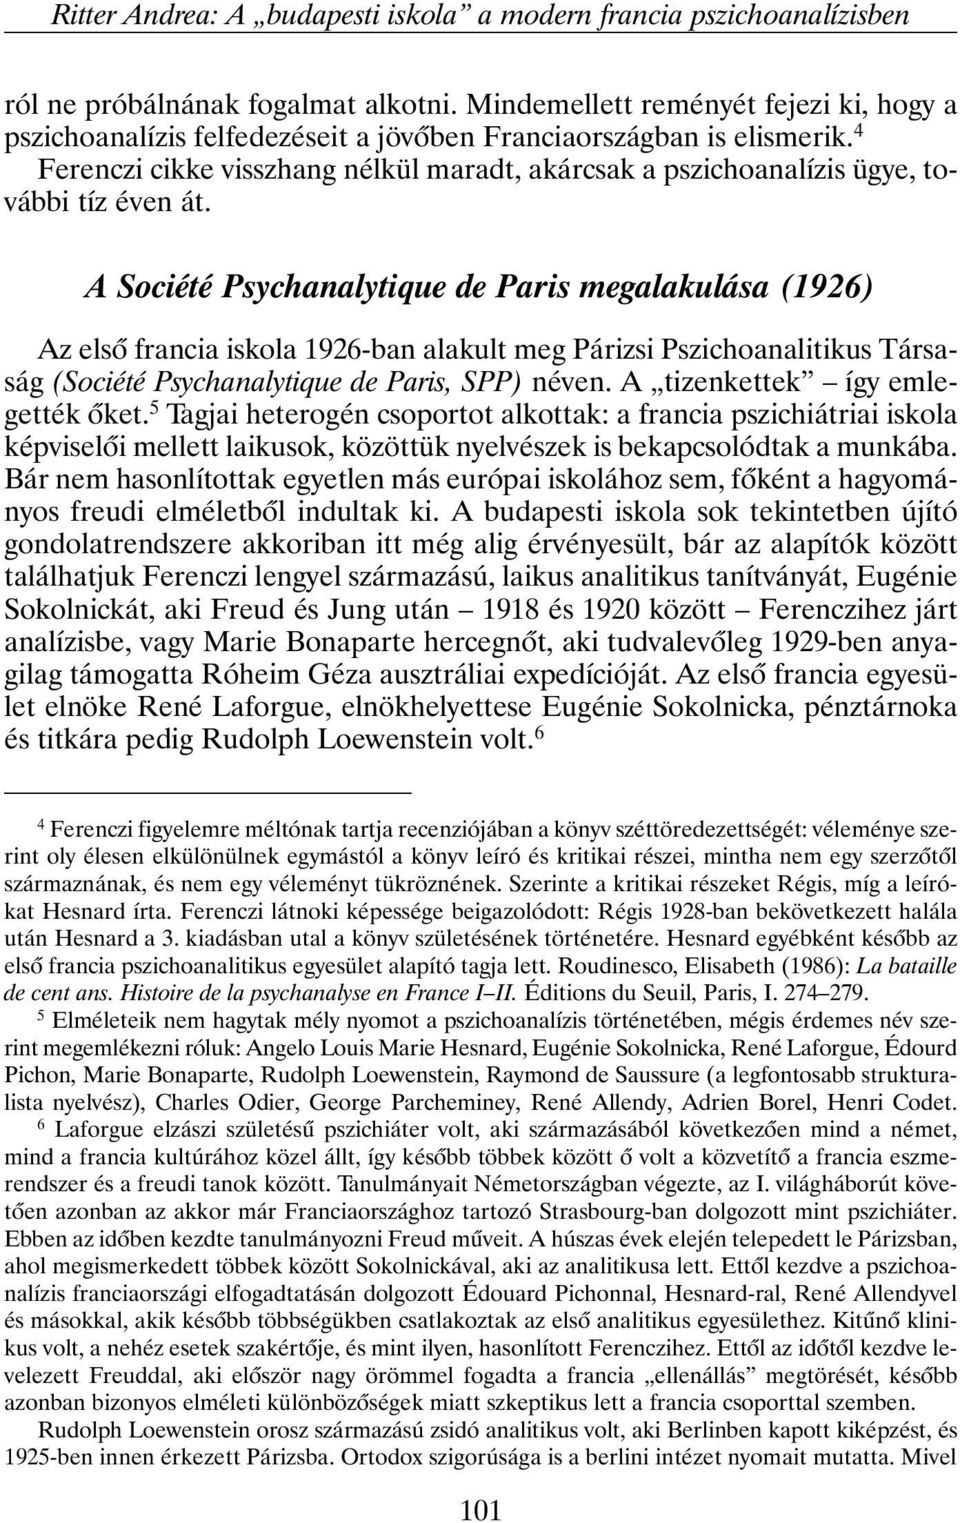 4 Ferenczi cikke visszhang nélkül maradt, akárcsak a pszichoanalízis ügye, további tíz éven át.